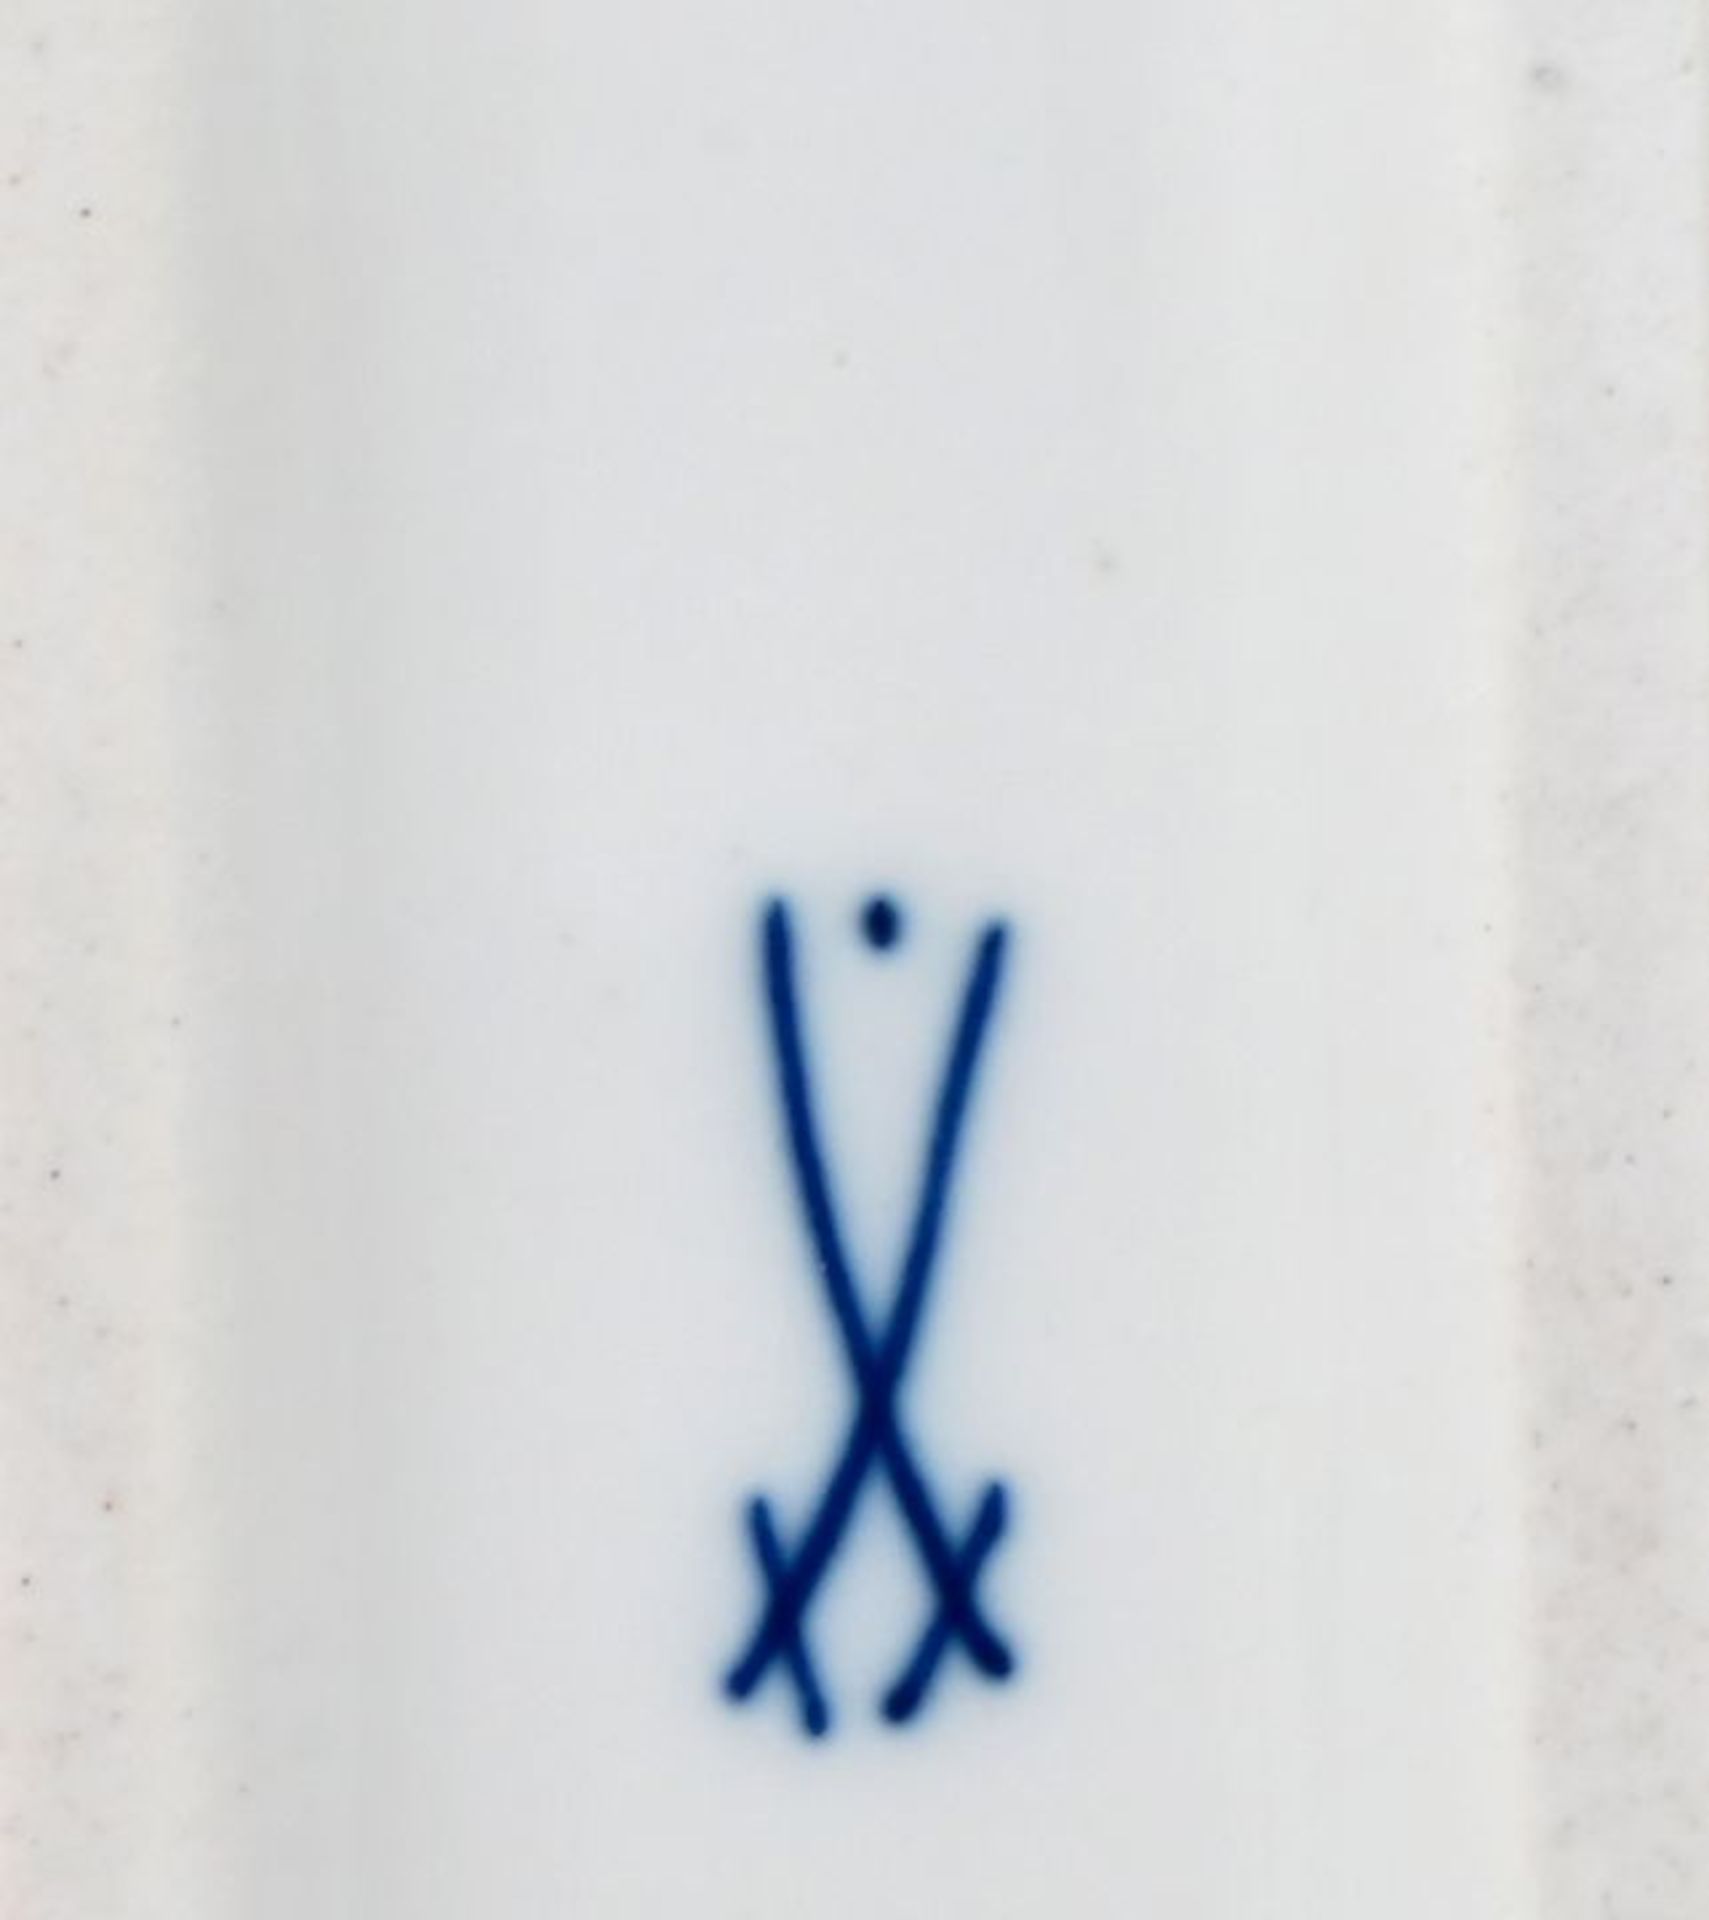 Schreibzeug, Meissen, um 1920/ writing utensils porcelain - Image 3 of 3